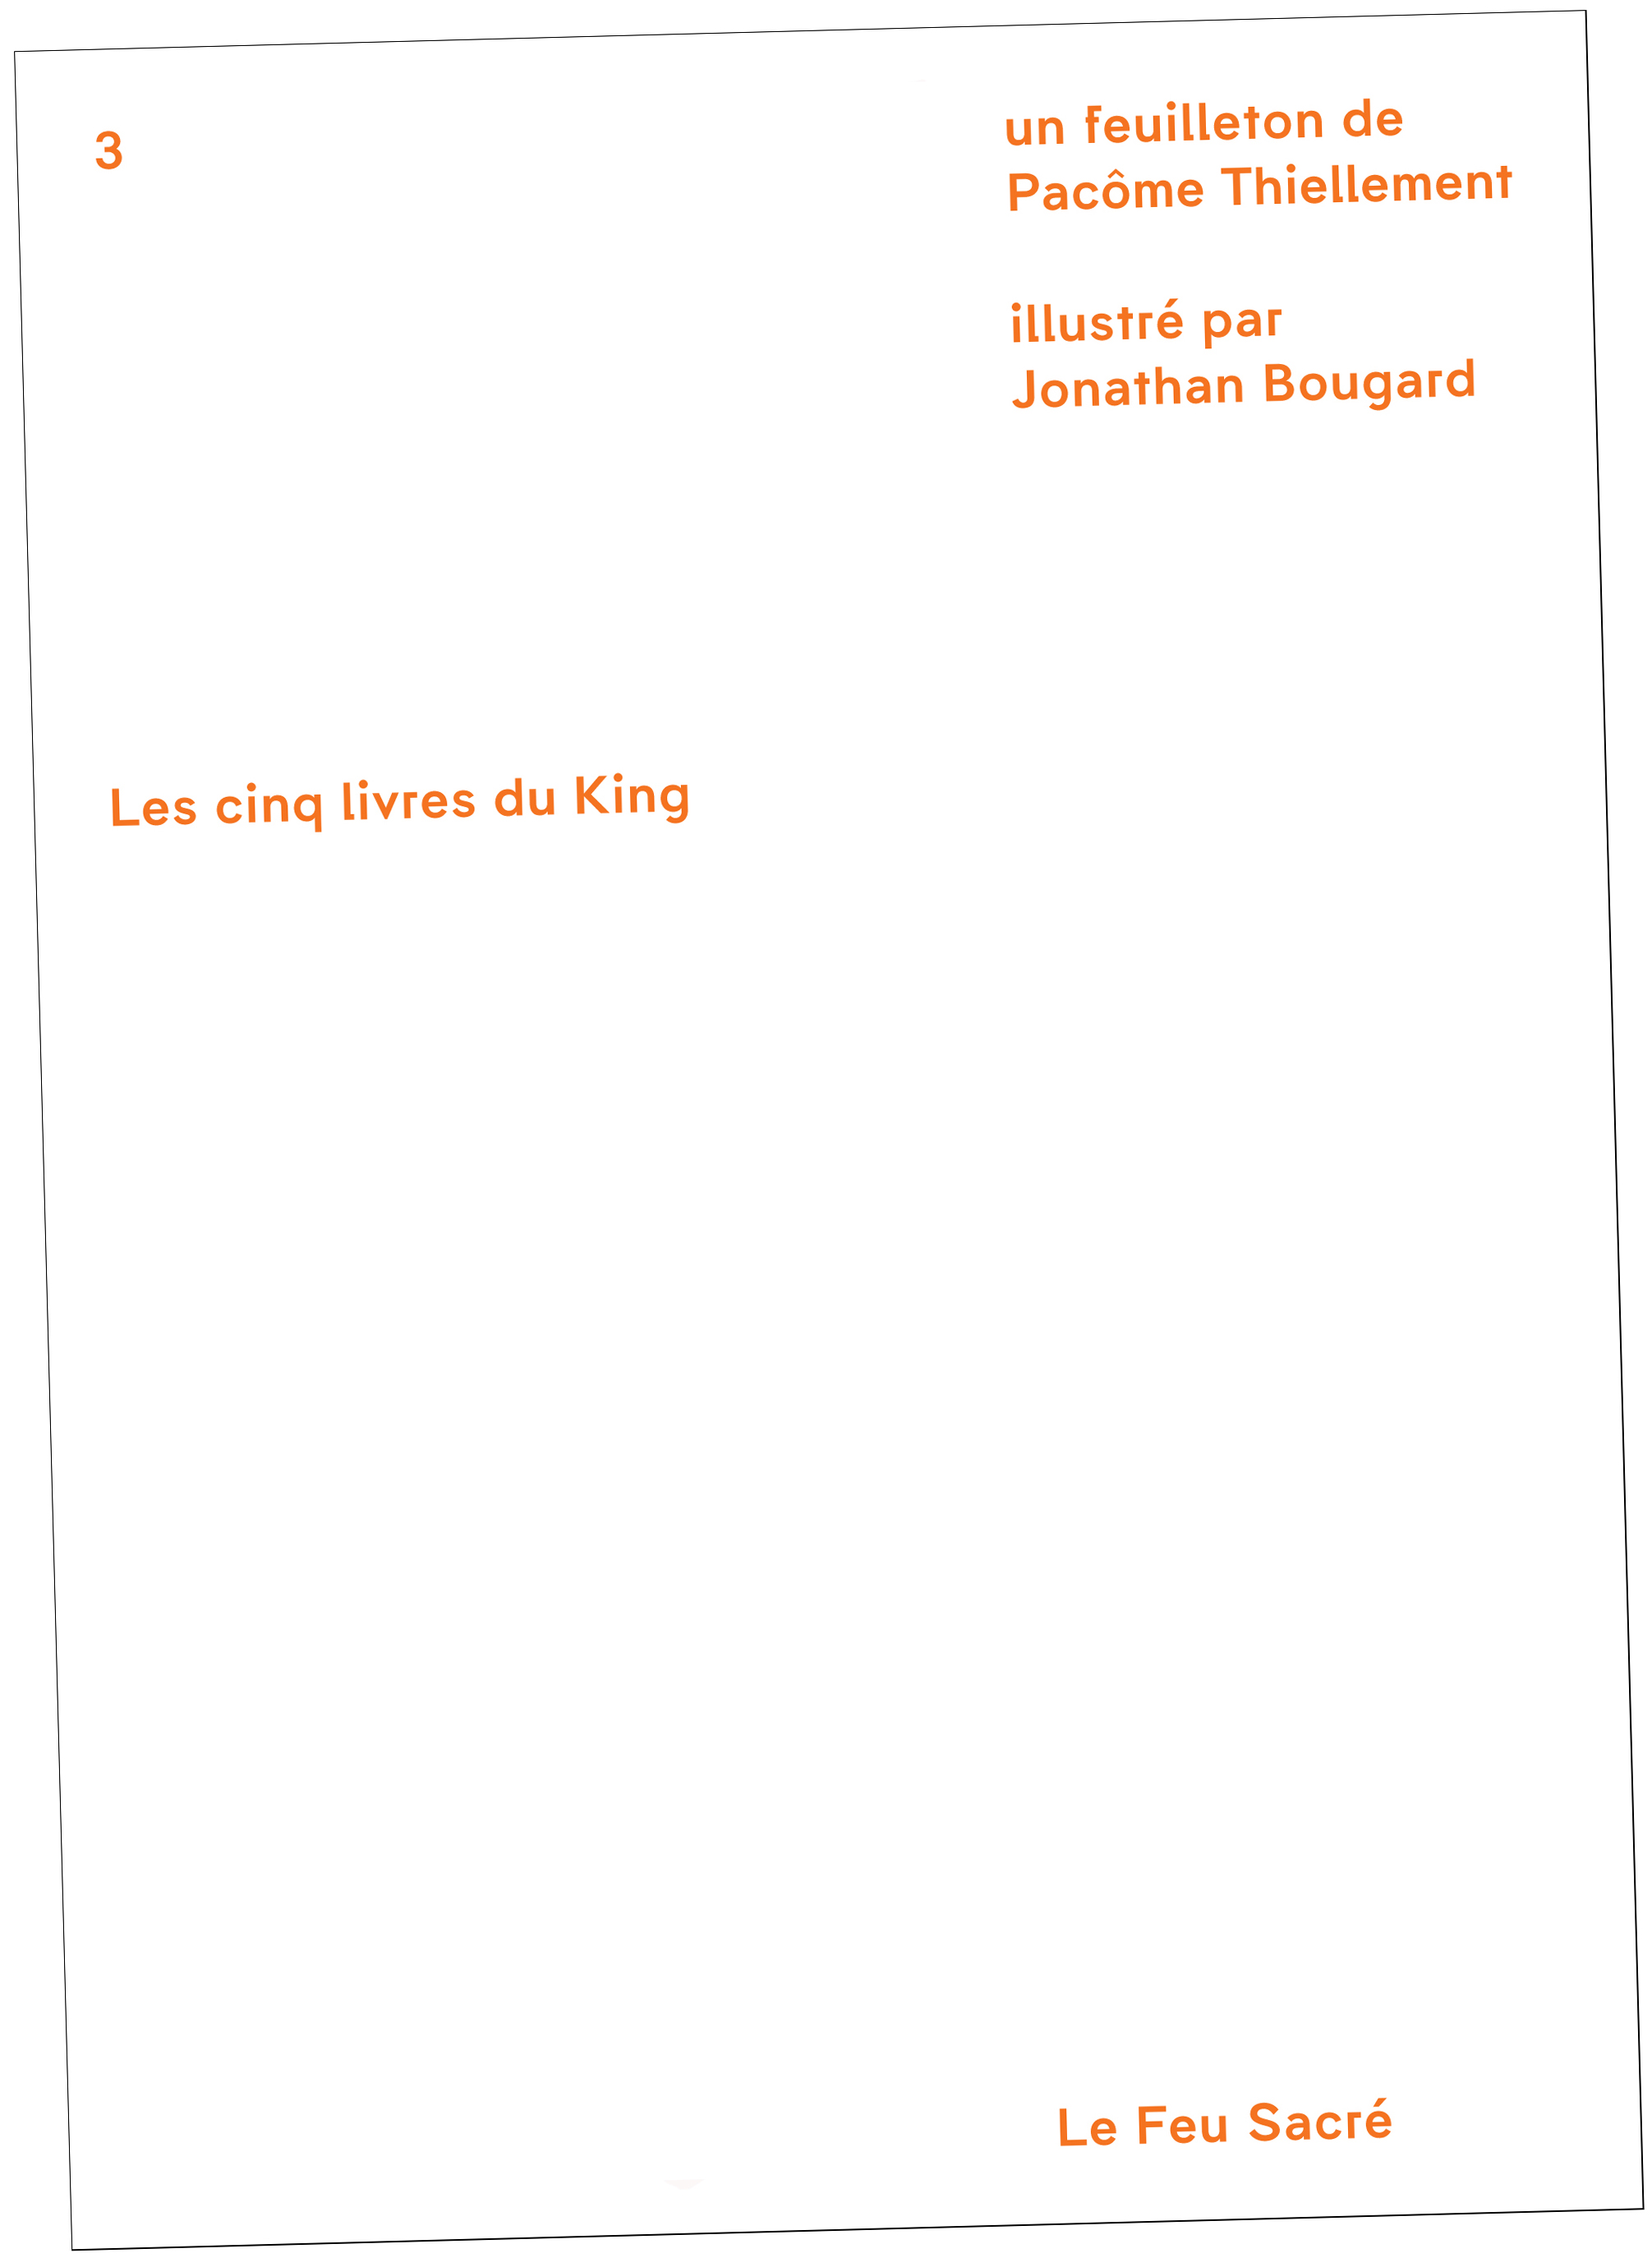 Les Cinq Livres du King - Couverture : Bizzarri & Rodriguez